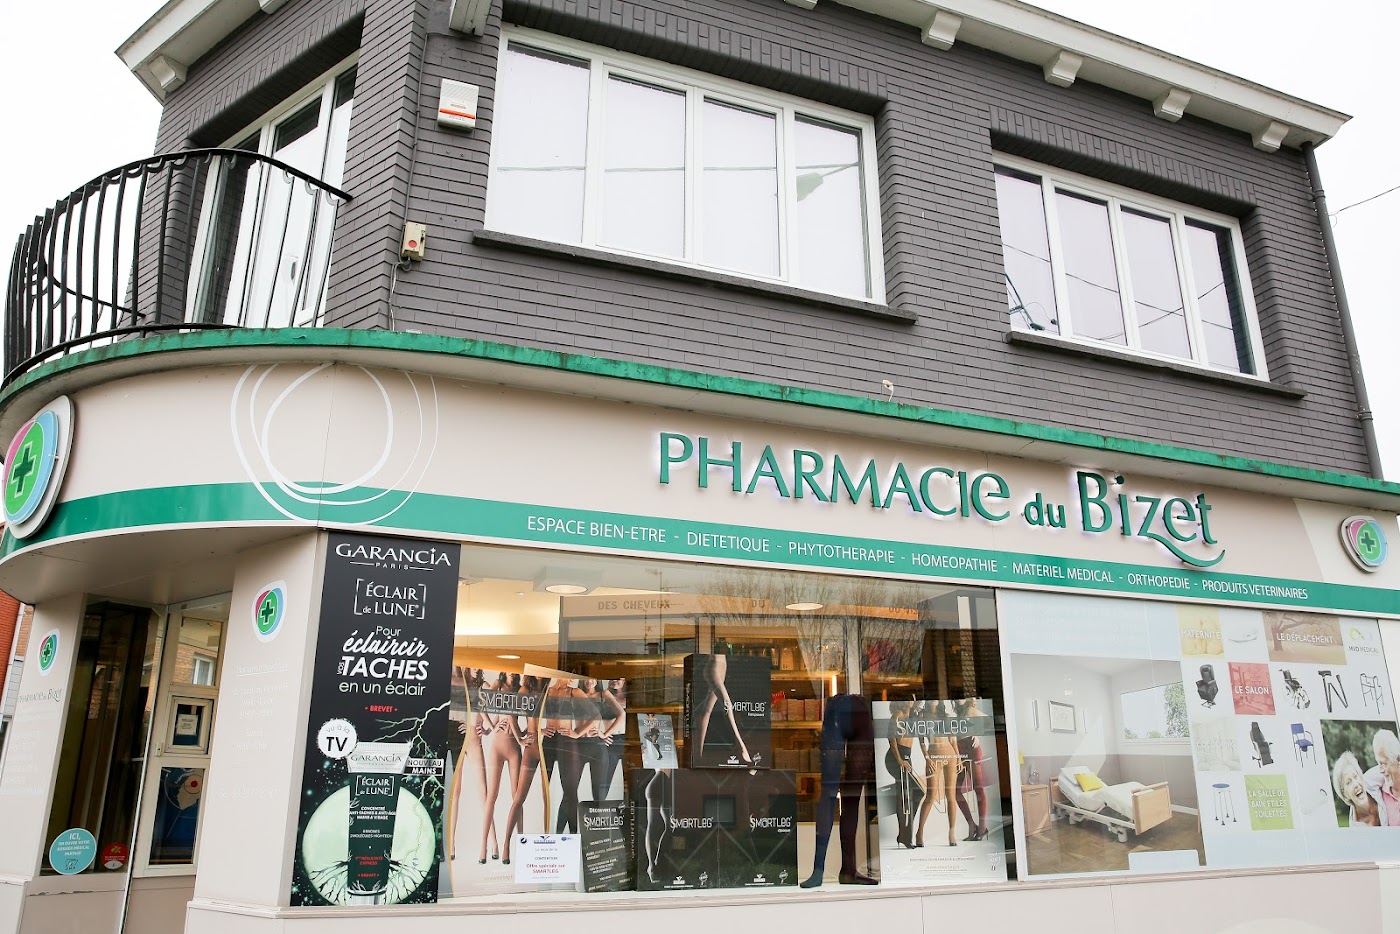 La Pharmacie du Bizet